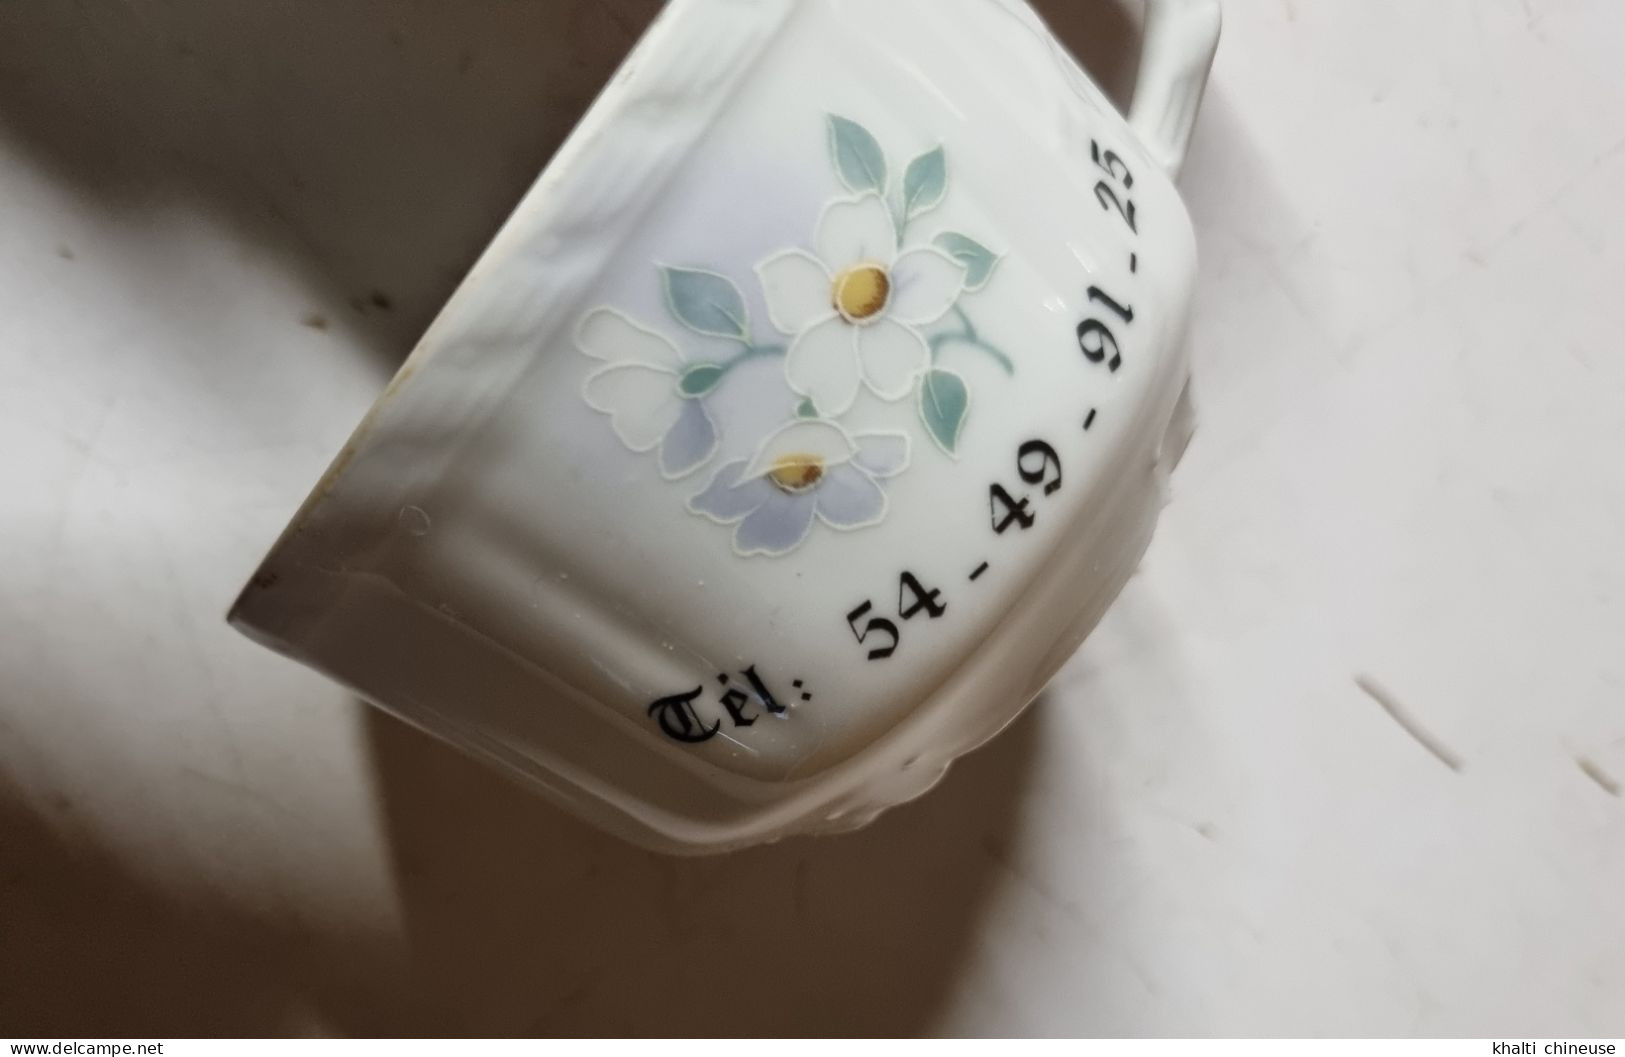 Tasse Publicitaire En Porcelaine Blanche Fleurie Vintage - Tasses